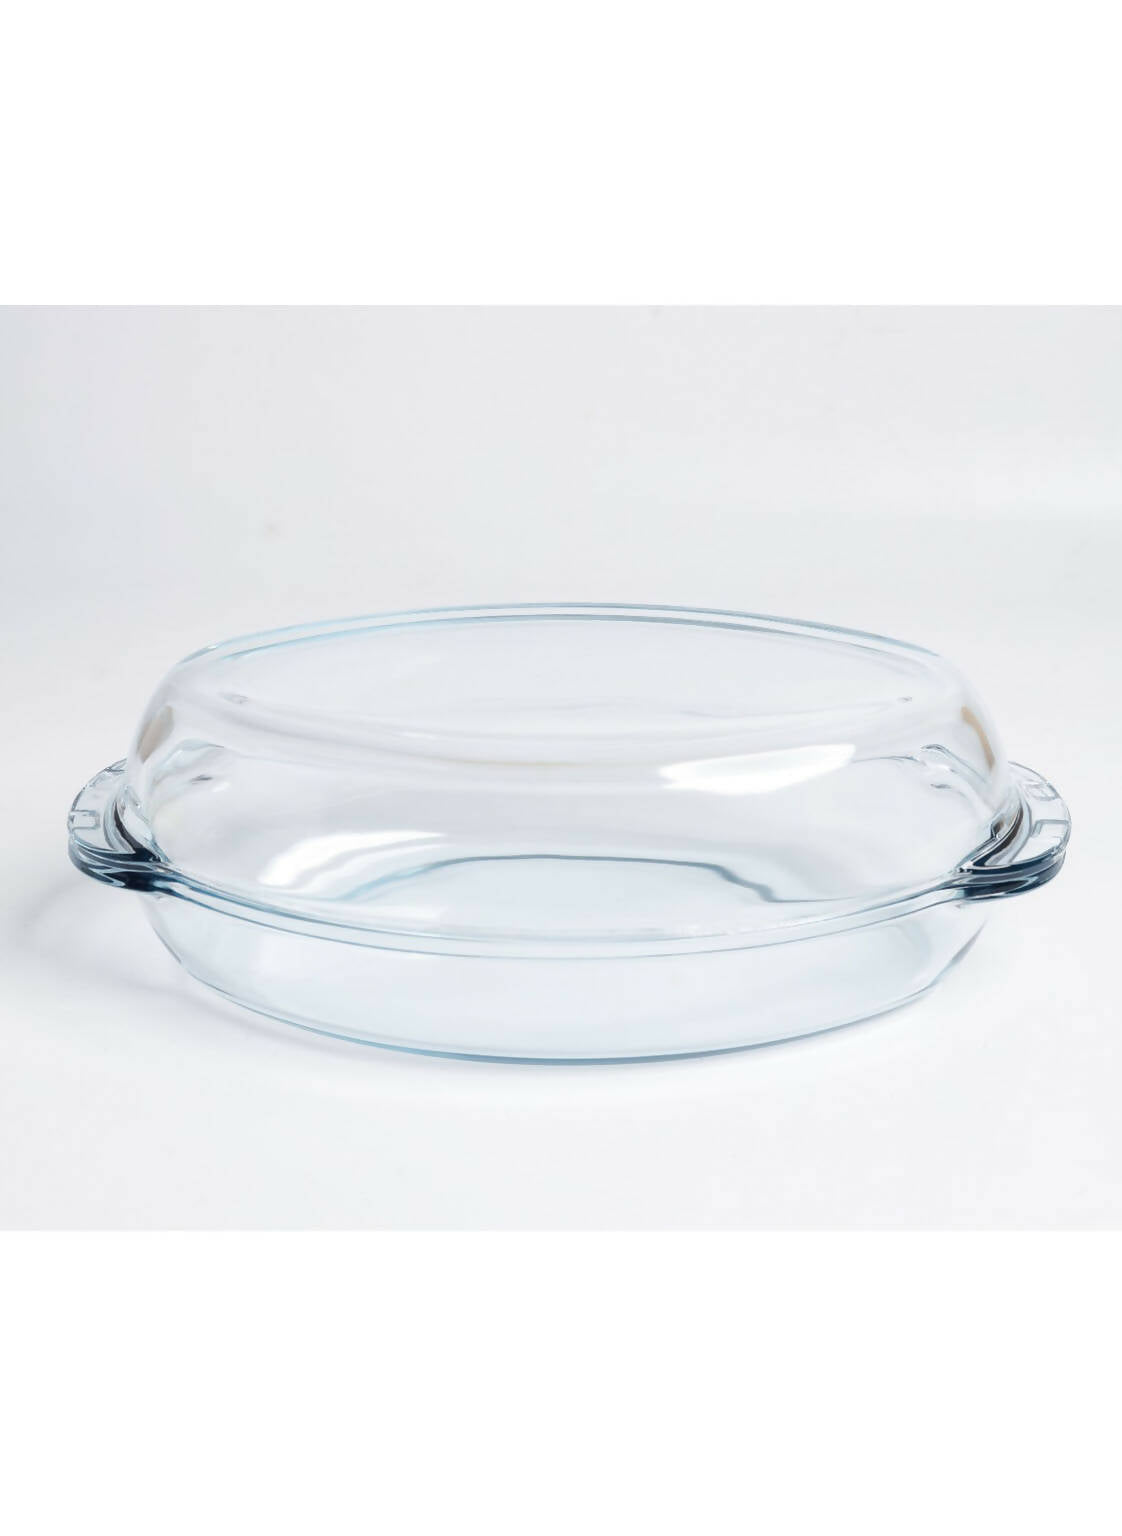 Birex Oval Glass With Glass Lid